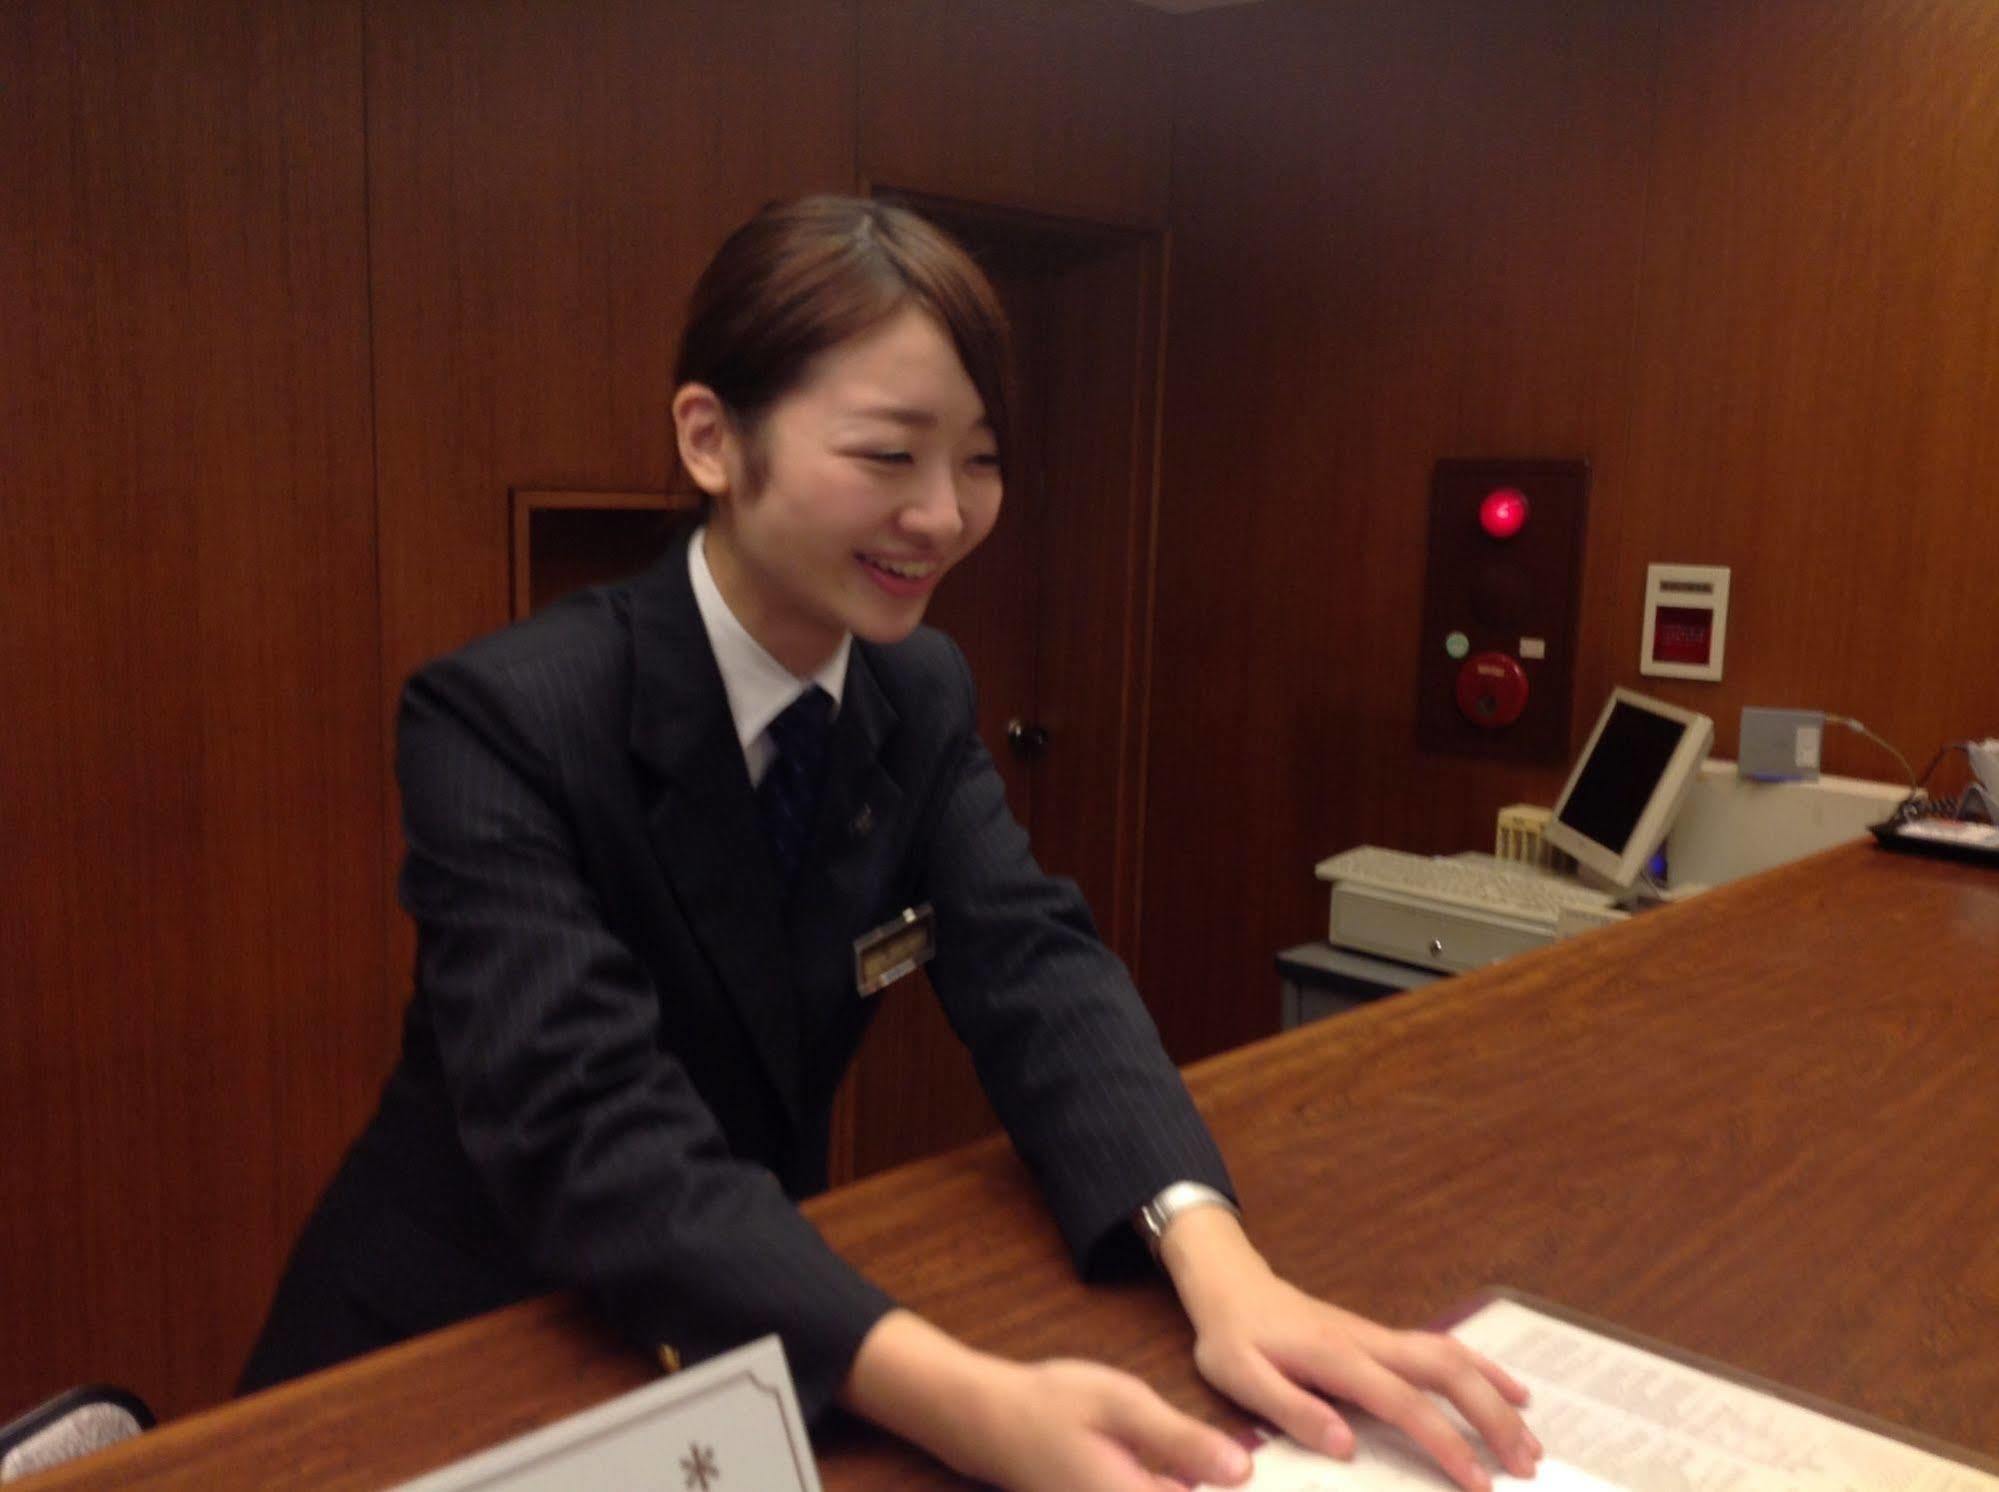 Okayama Plaza Hotel Exteriör bild